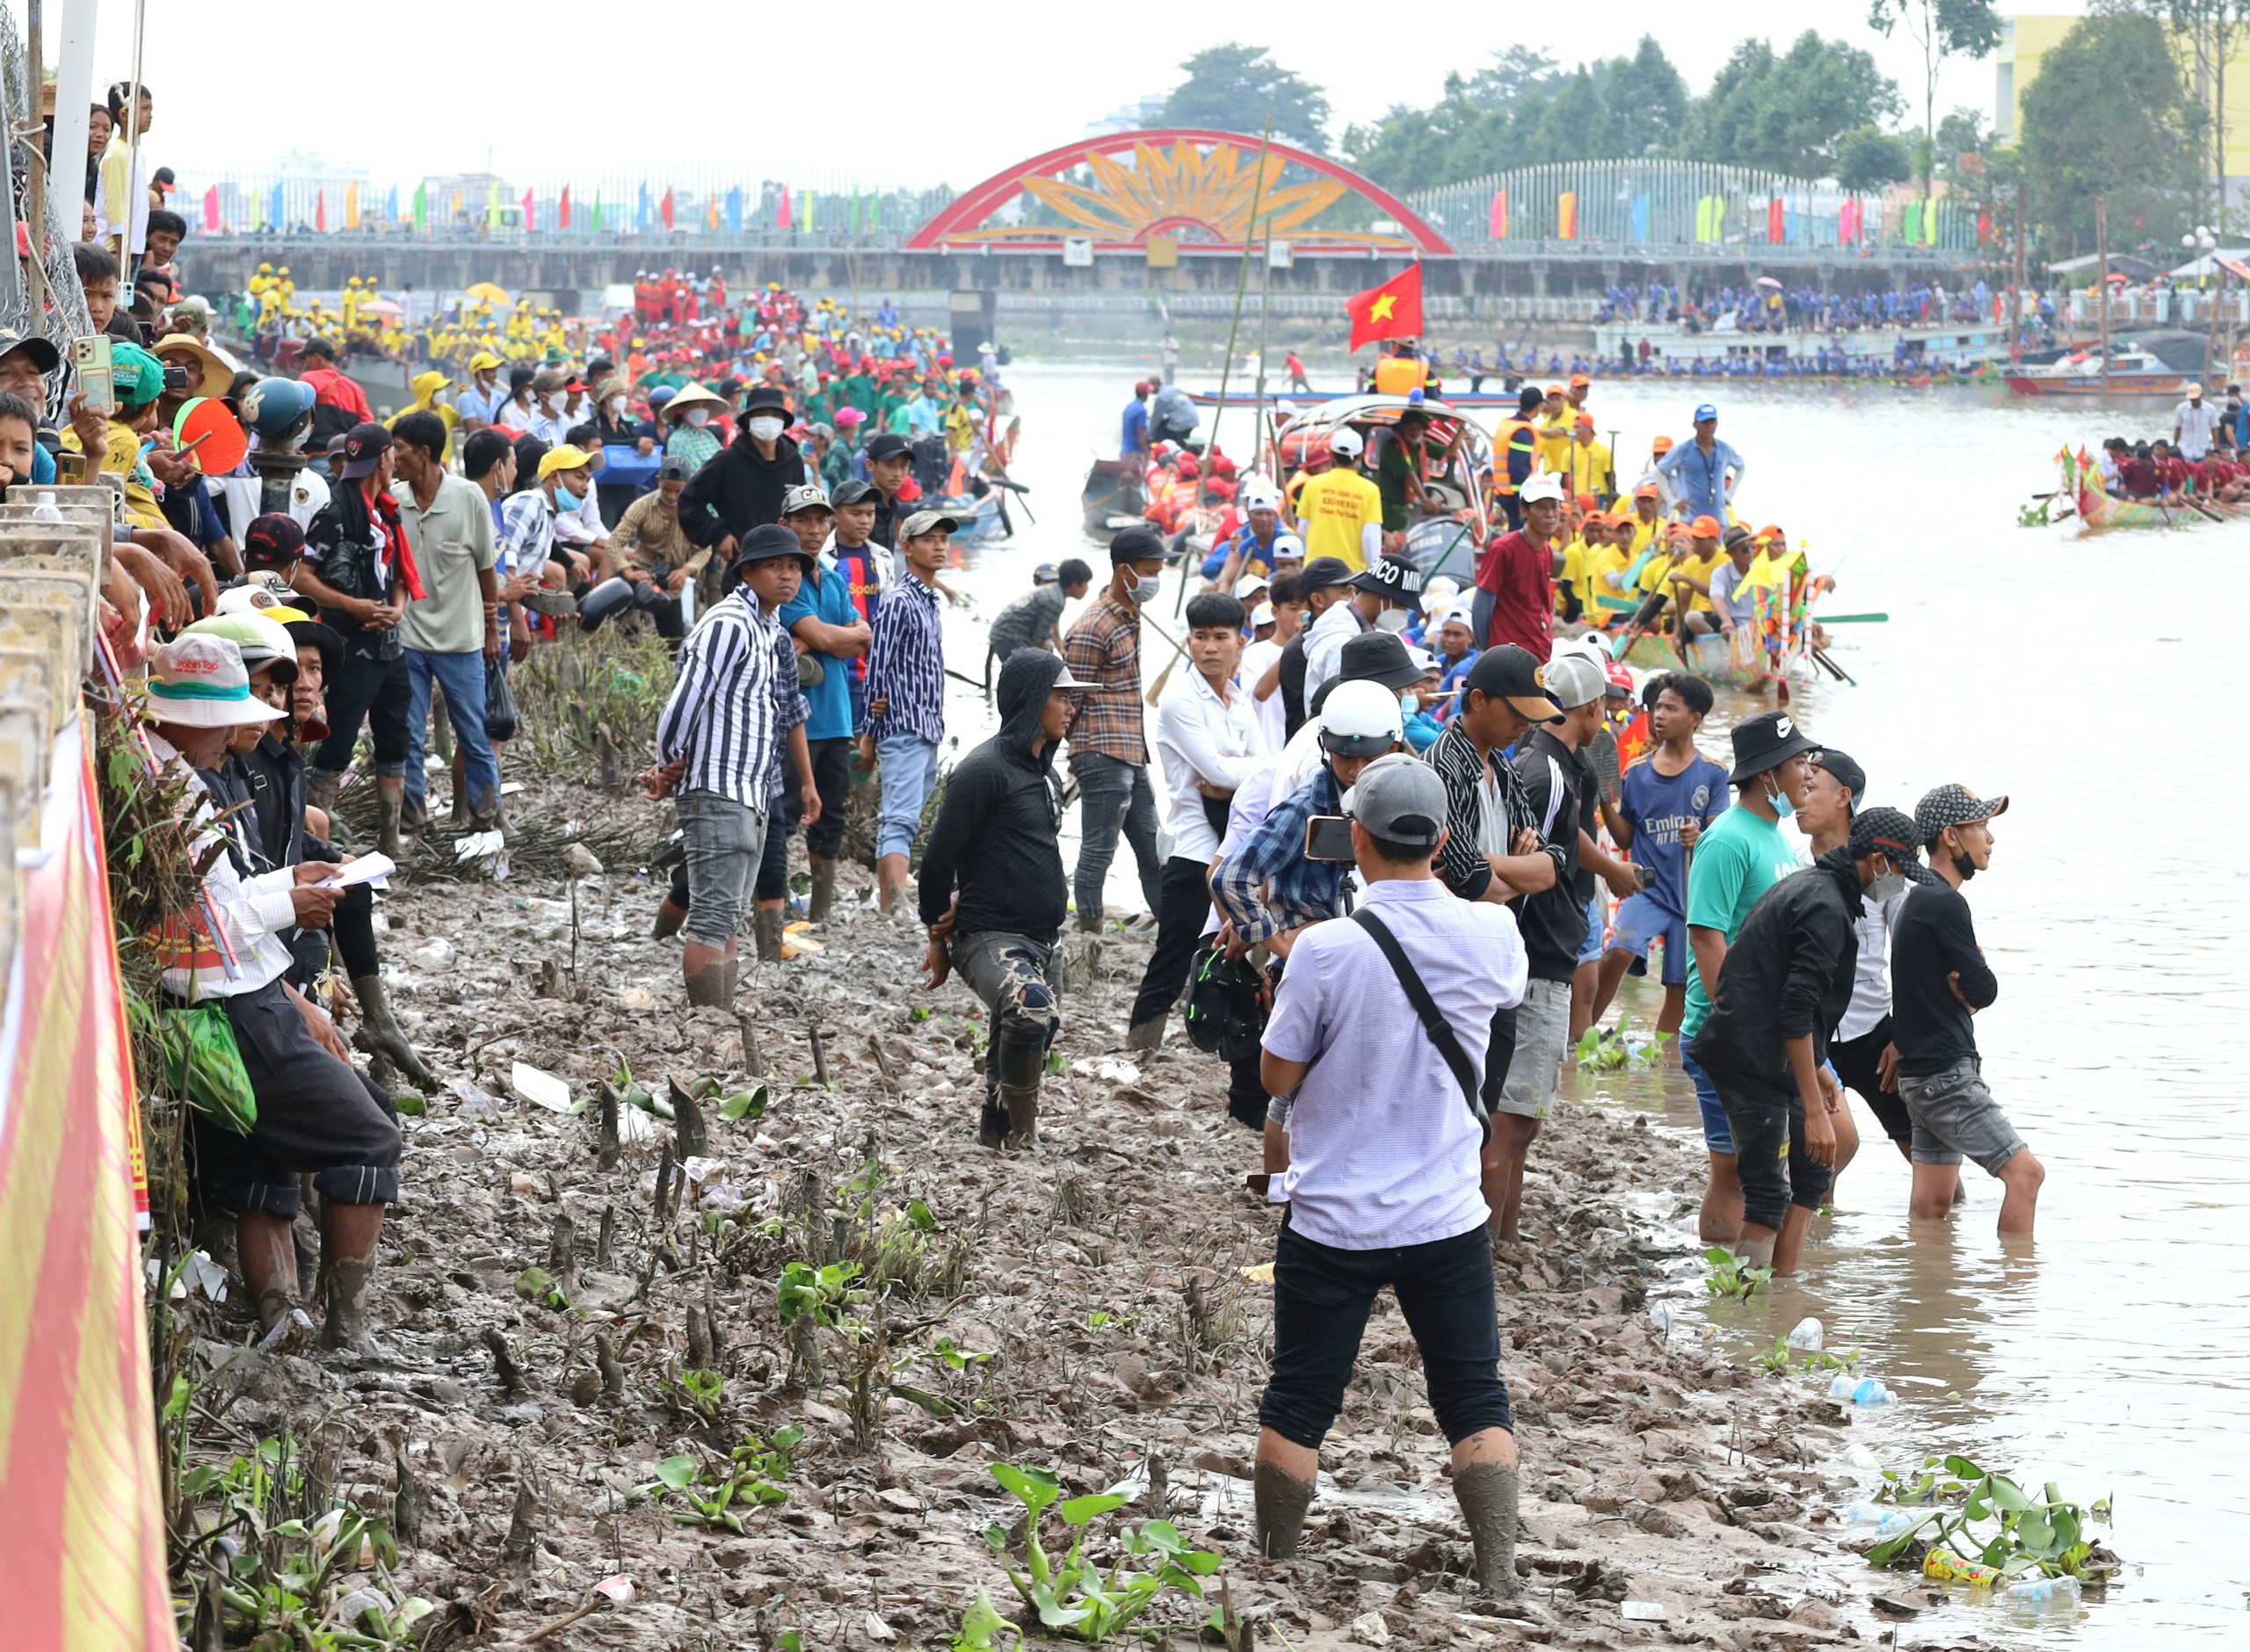 Khán giả lội xuống sông để tìm vị trí thuận tiện đón xem các đội thi đấu.